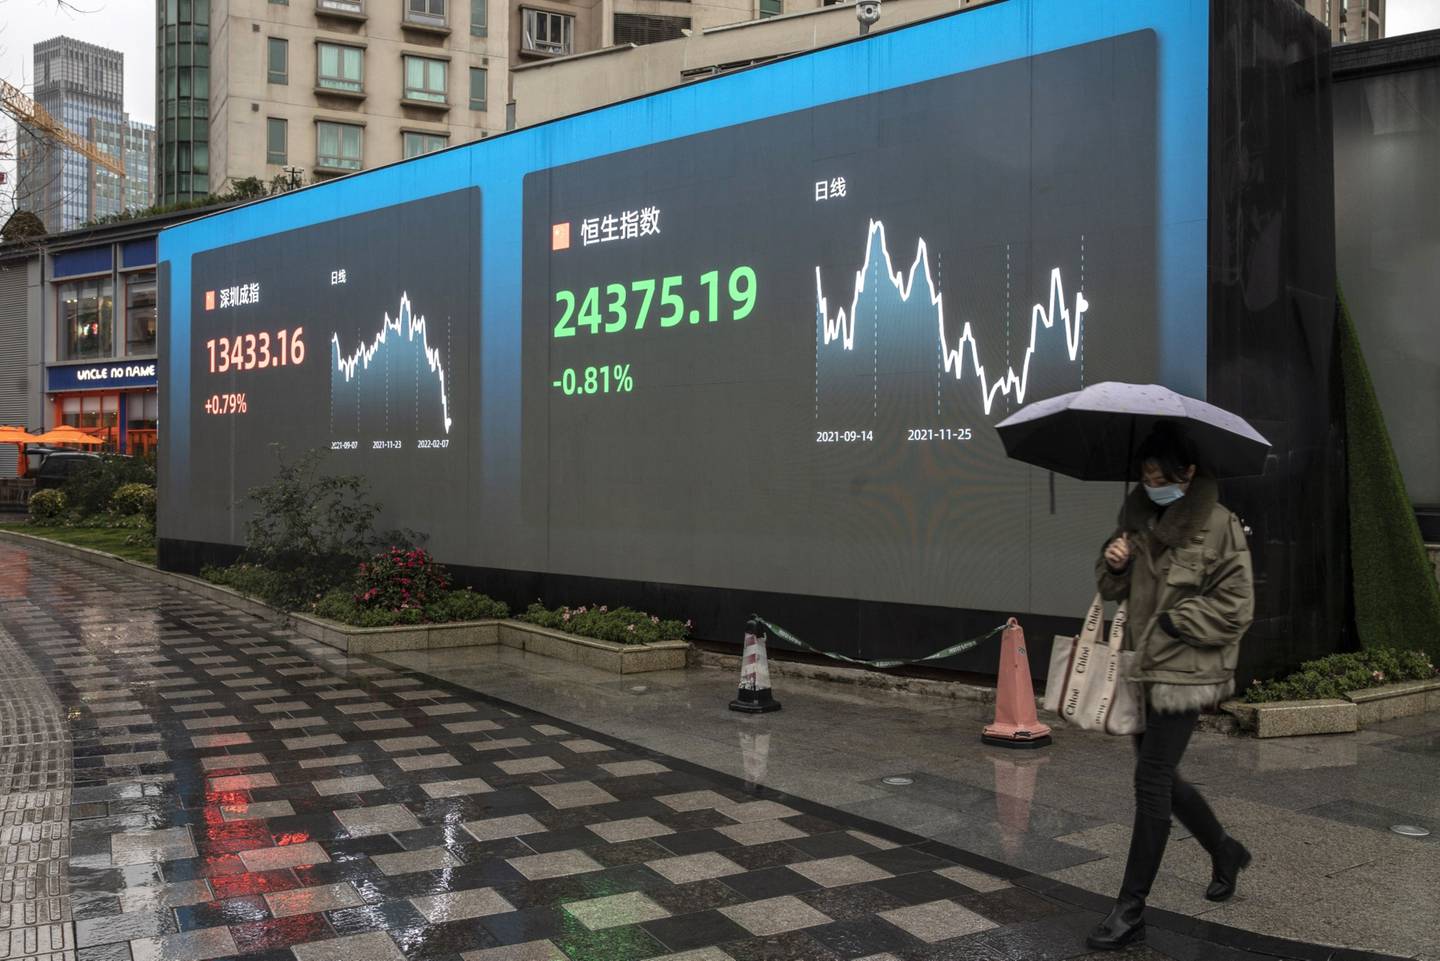 Una pantalla pública muestra las cifras de la Bolsa de Shenzhen y del índice Hang Seng en Shanghai, China, el lunes 7 de febrero de 2022.